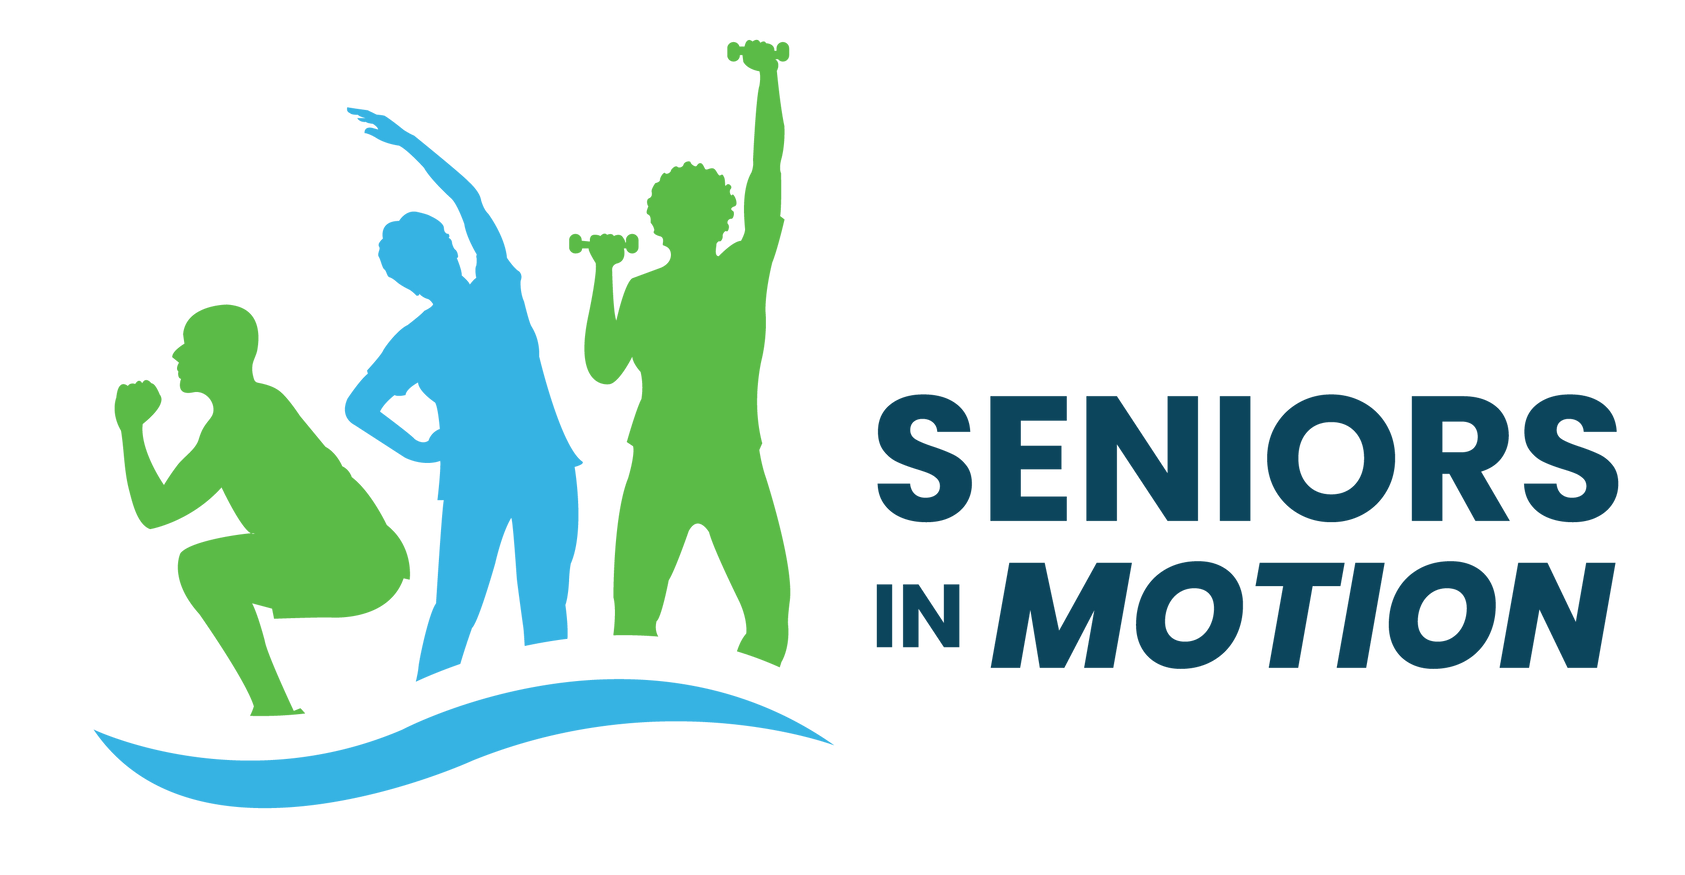 Seniors in Motions Business Logo